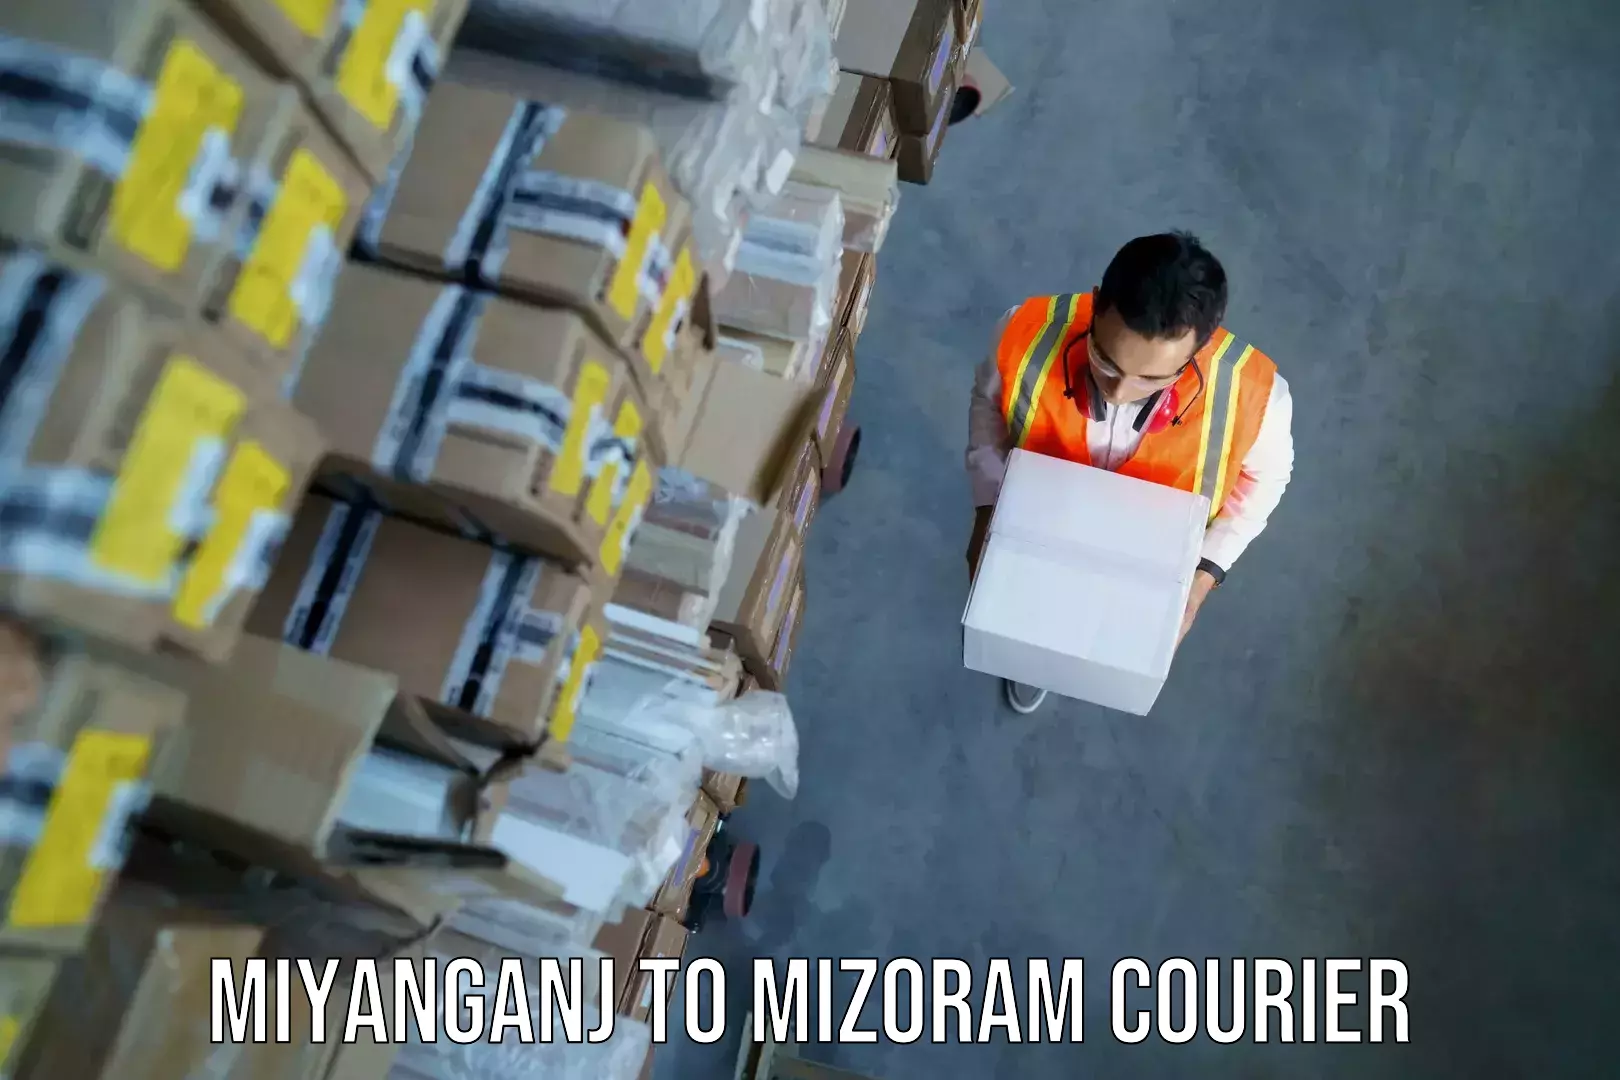 Weekend baggage shipping Miyanganj to Mizoram